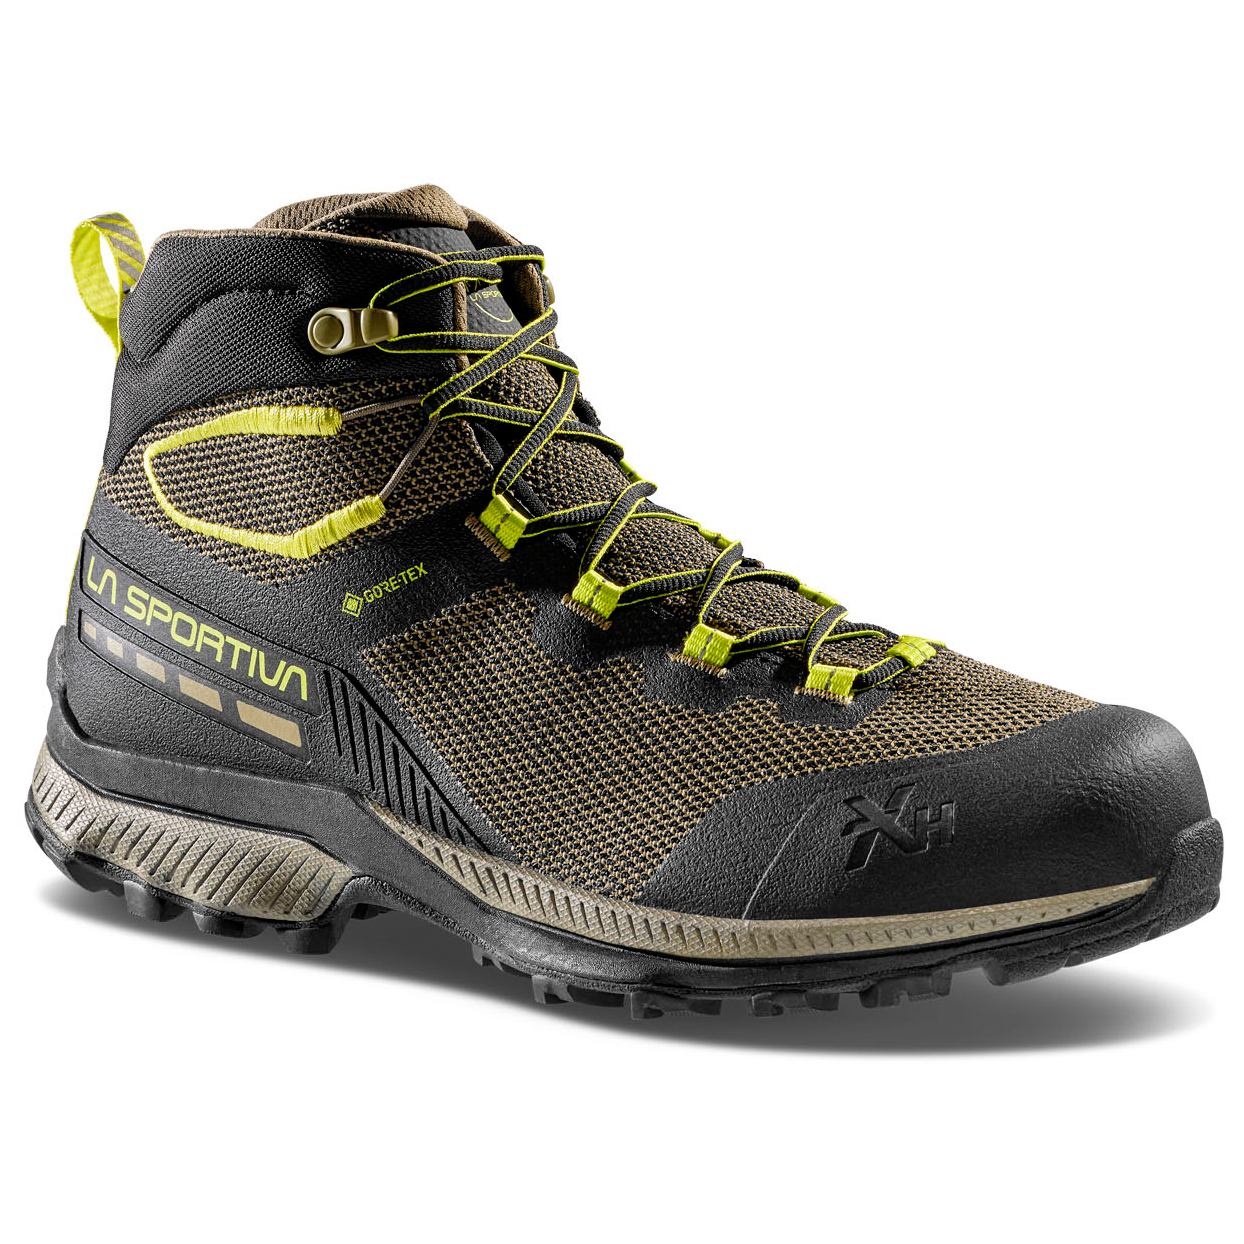 Ботинки для прогулки La Sportiva TX Hike Mid GTX, цвет Black/Lime Punch ботинки для прогулки la sportiva women s tx hike mid gtx цвет topaz carbon